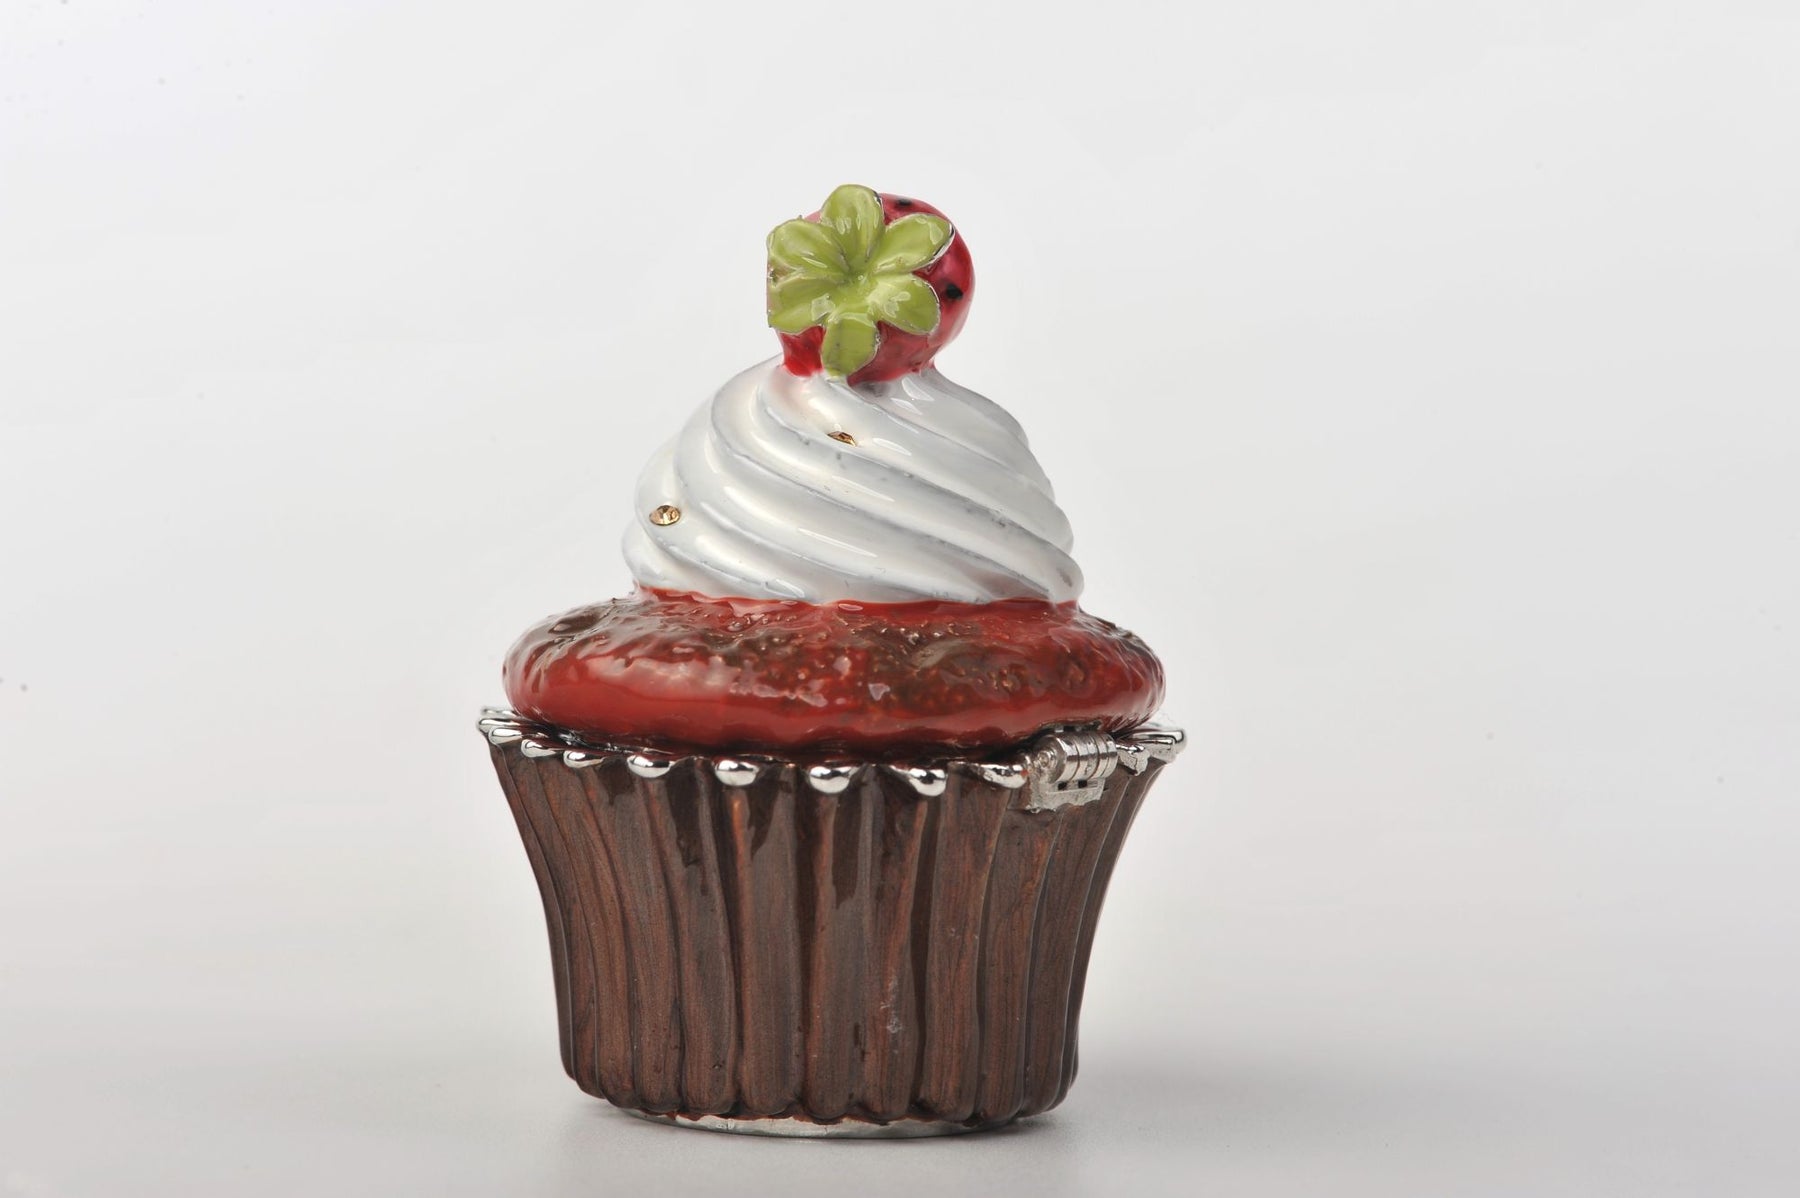 Keren Kopal Red Velvet Cupcake with Strawberry  41.25